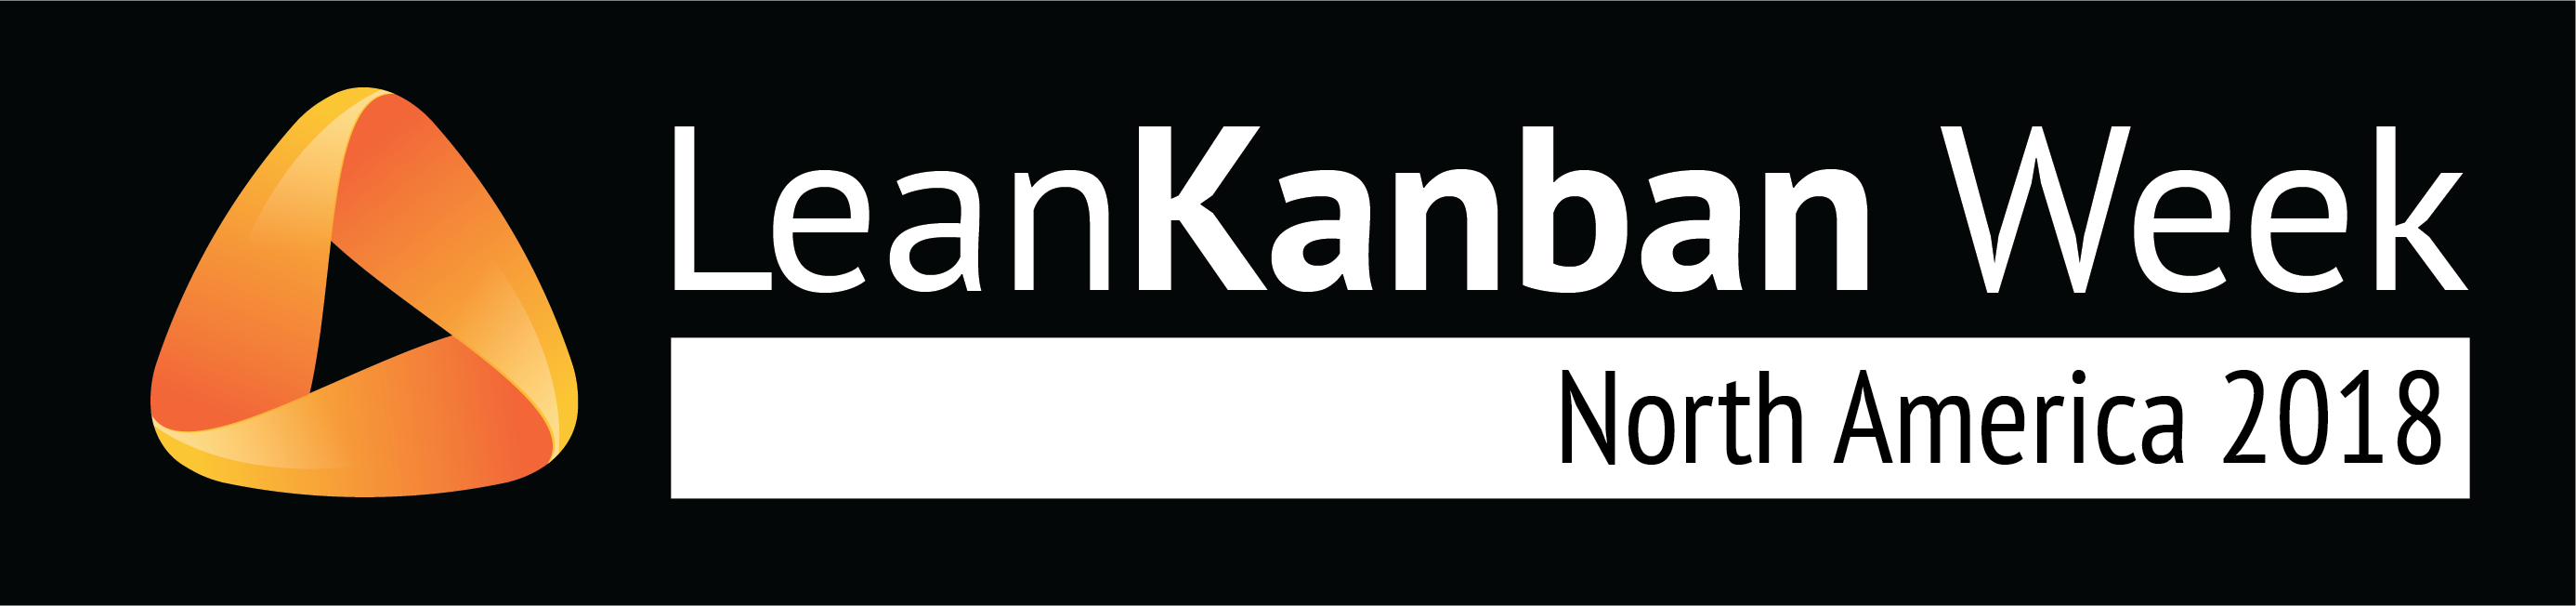 Lean Kanban Week 2018